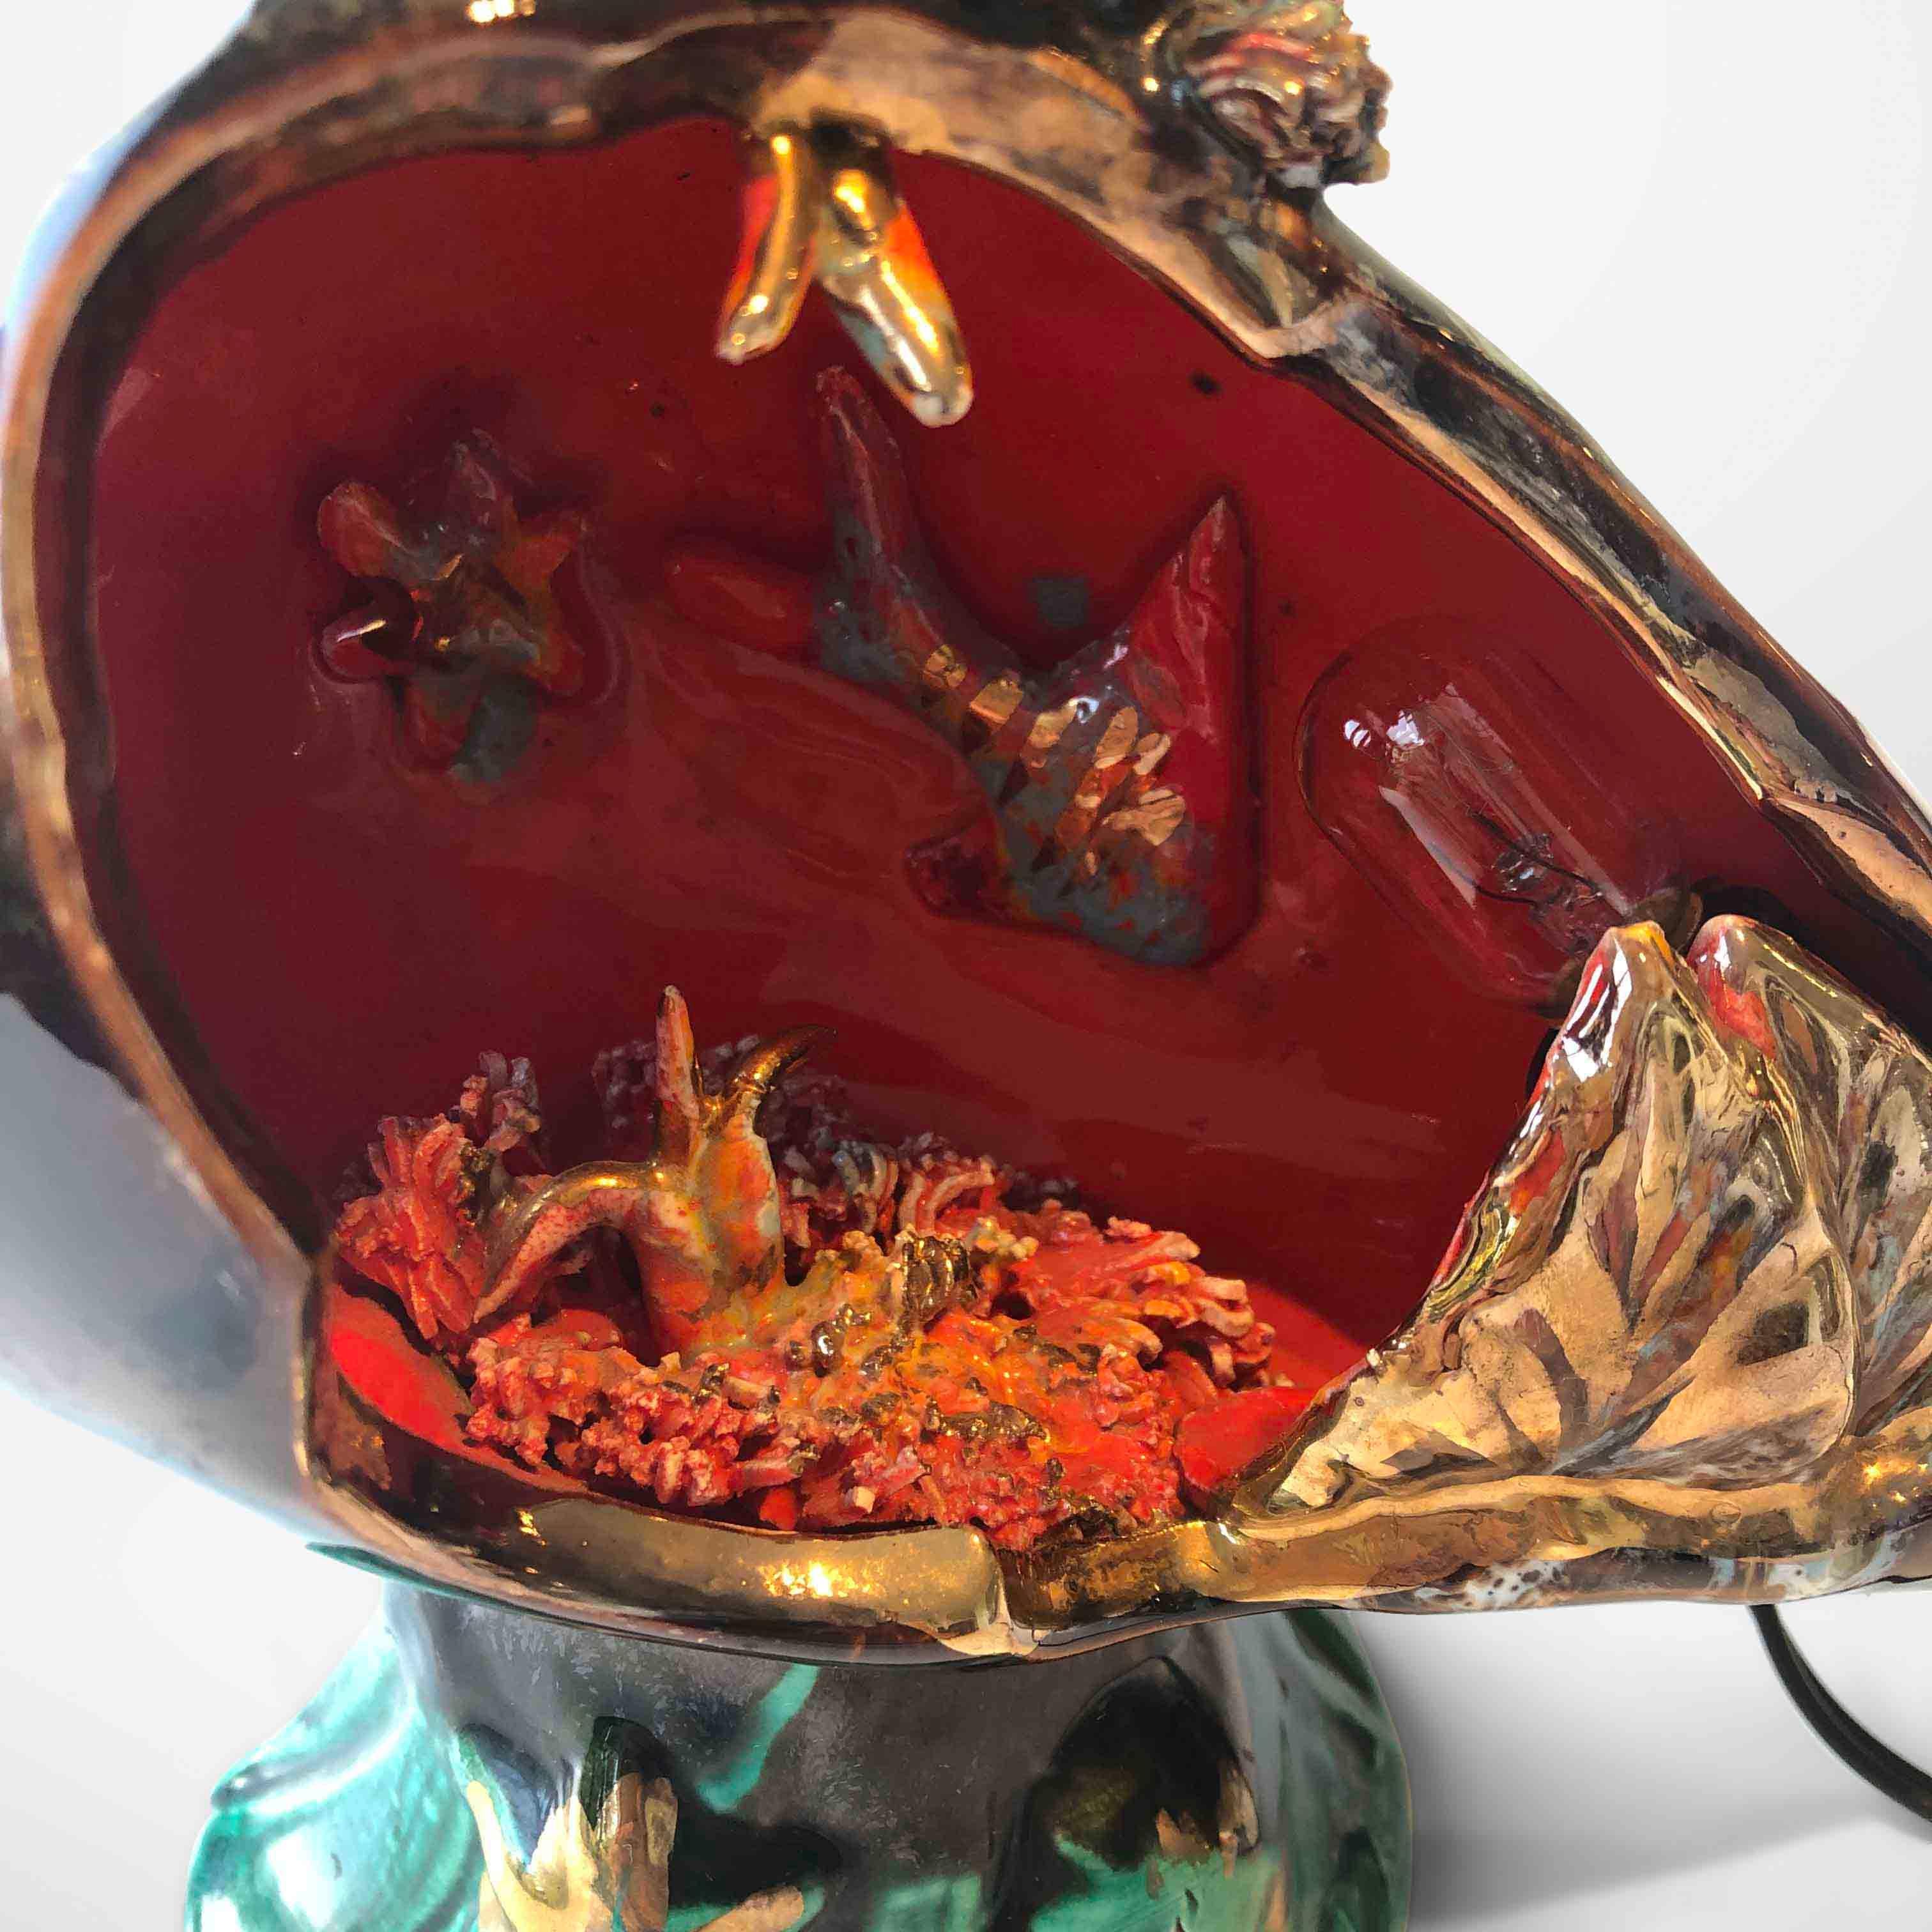 Lampe amphore en céramique originale des années 1950 par Vallauris. Ce type de lampe de table existe dans de nombreuses versions, toutes avec des poissons, des coquillages, des crustacés et des étoiles de mer. Des couleurs vives avec des détails